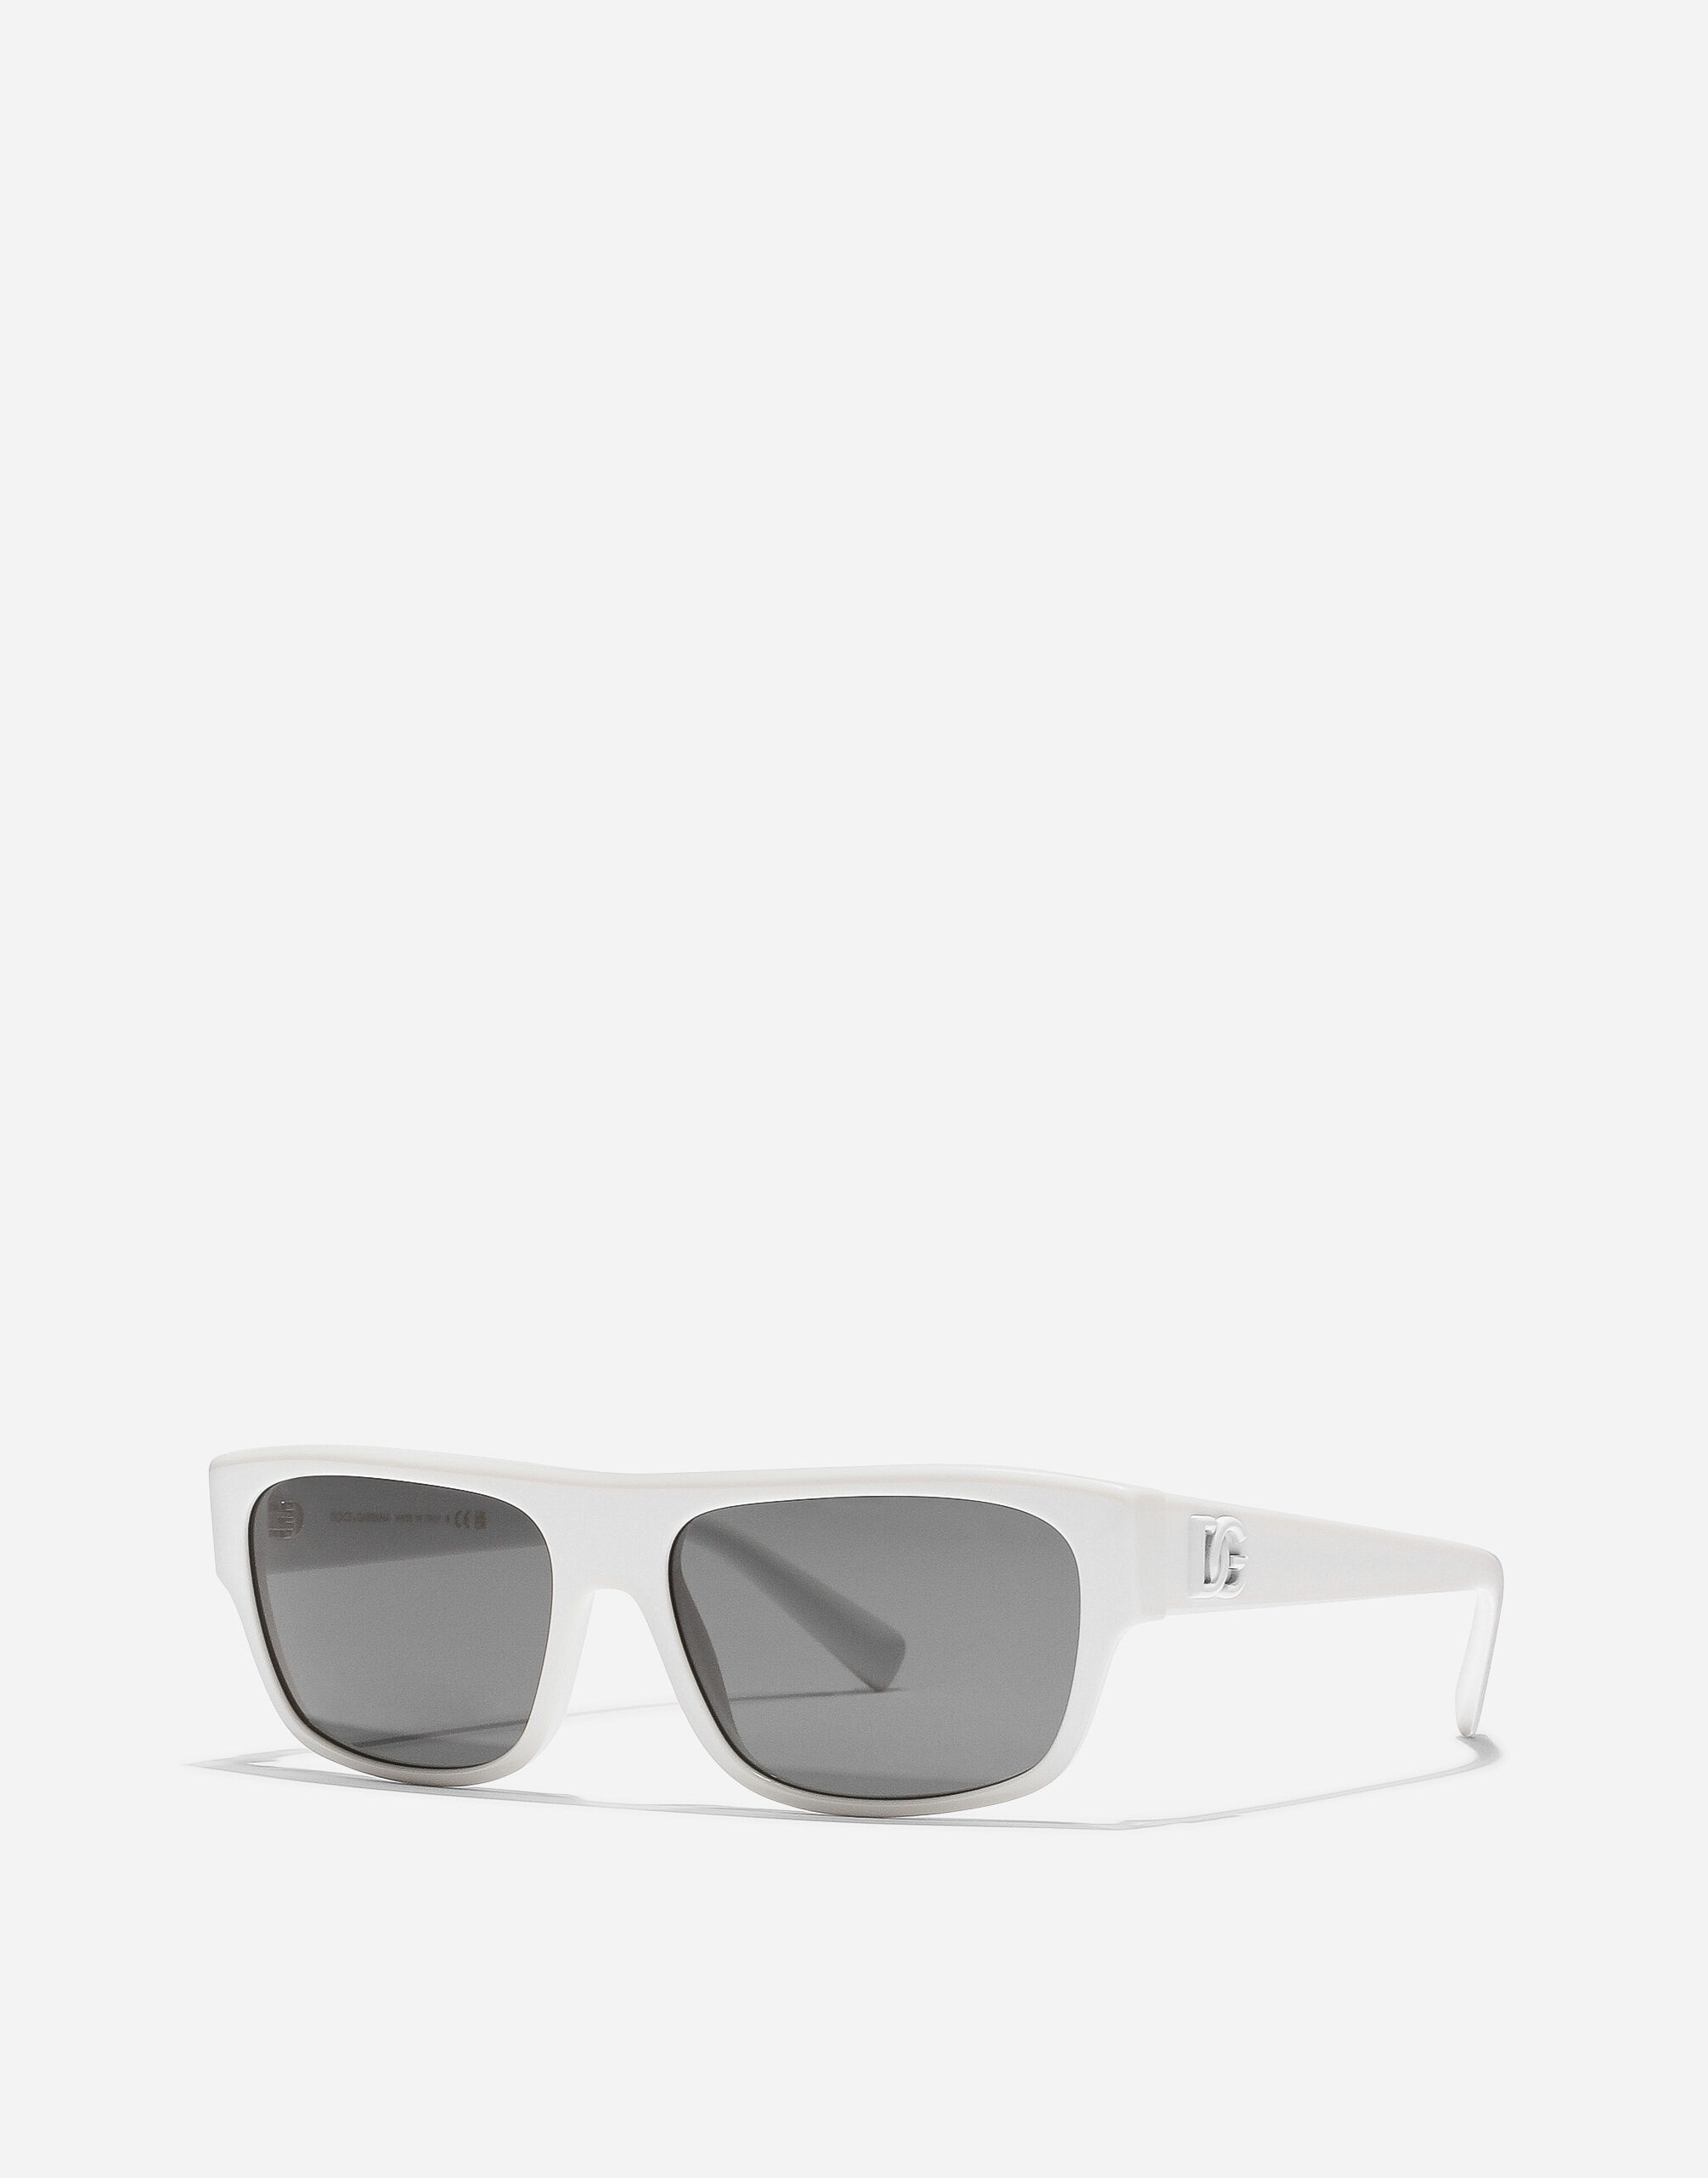 DG Crossed sunglasses - 6